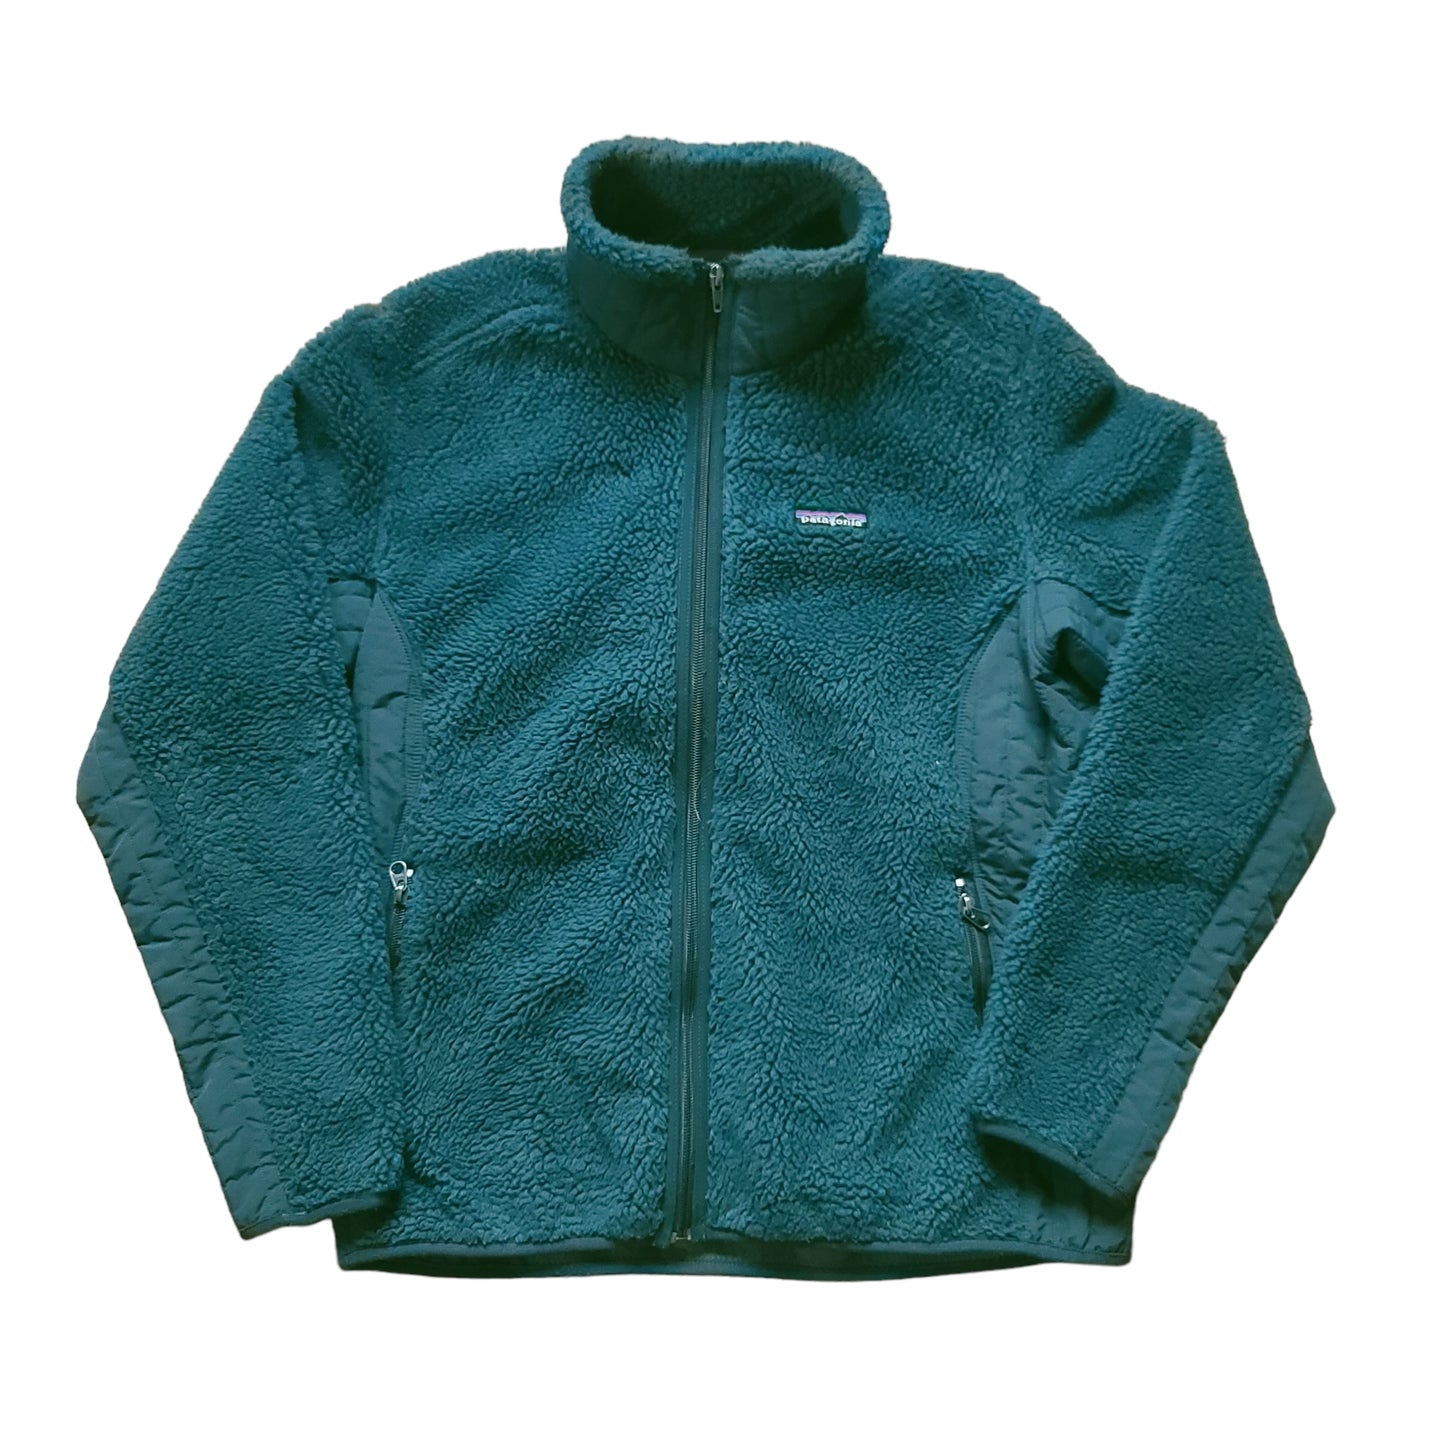 Patagonia Turquoise Deep Pile Fleece Jacket